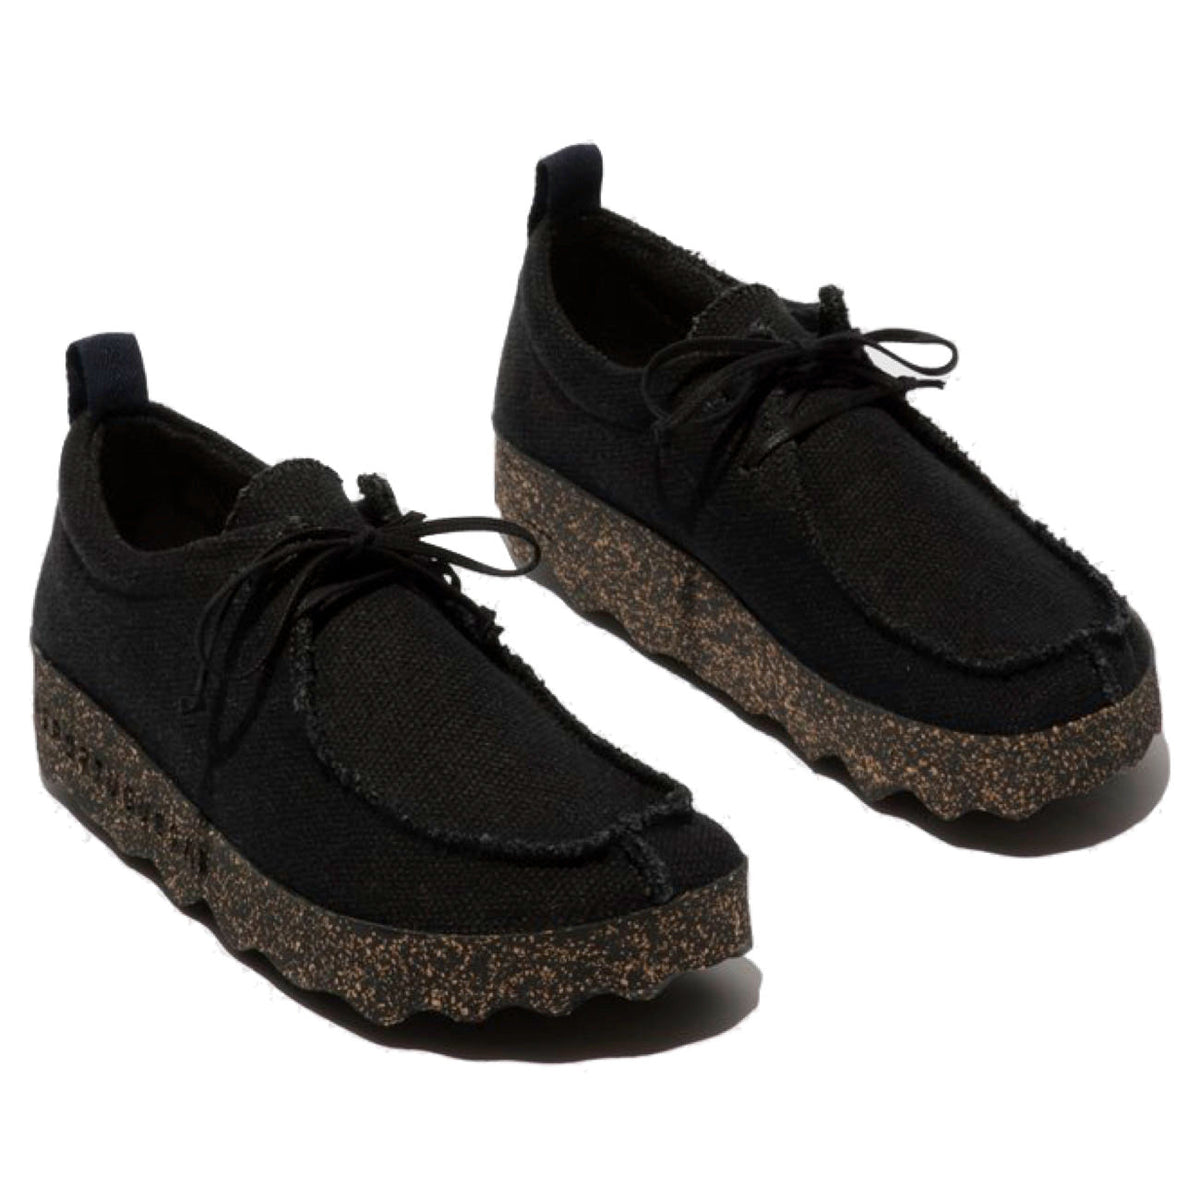 Asportuguesus, AS21 Chat, Laceup Shoes, Black Linen &amp; Black sole Shoes Asportuguesas Black Linen &amp; Black sole 37 